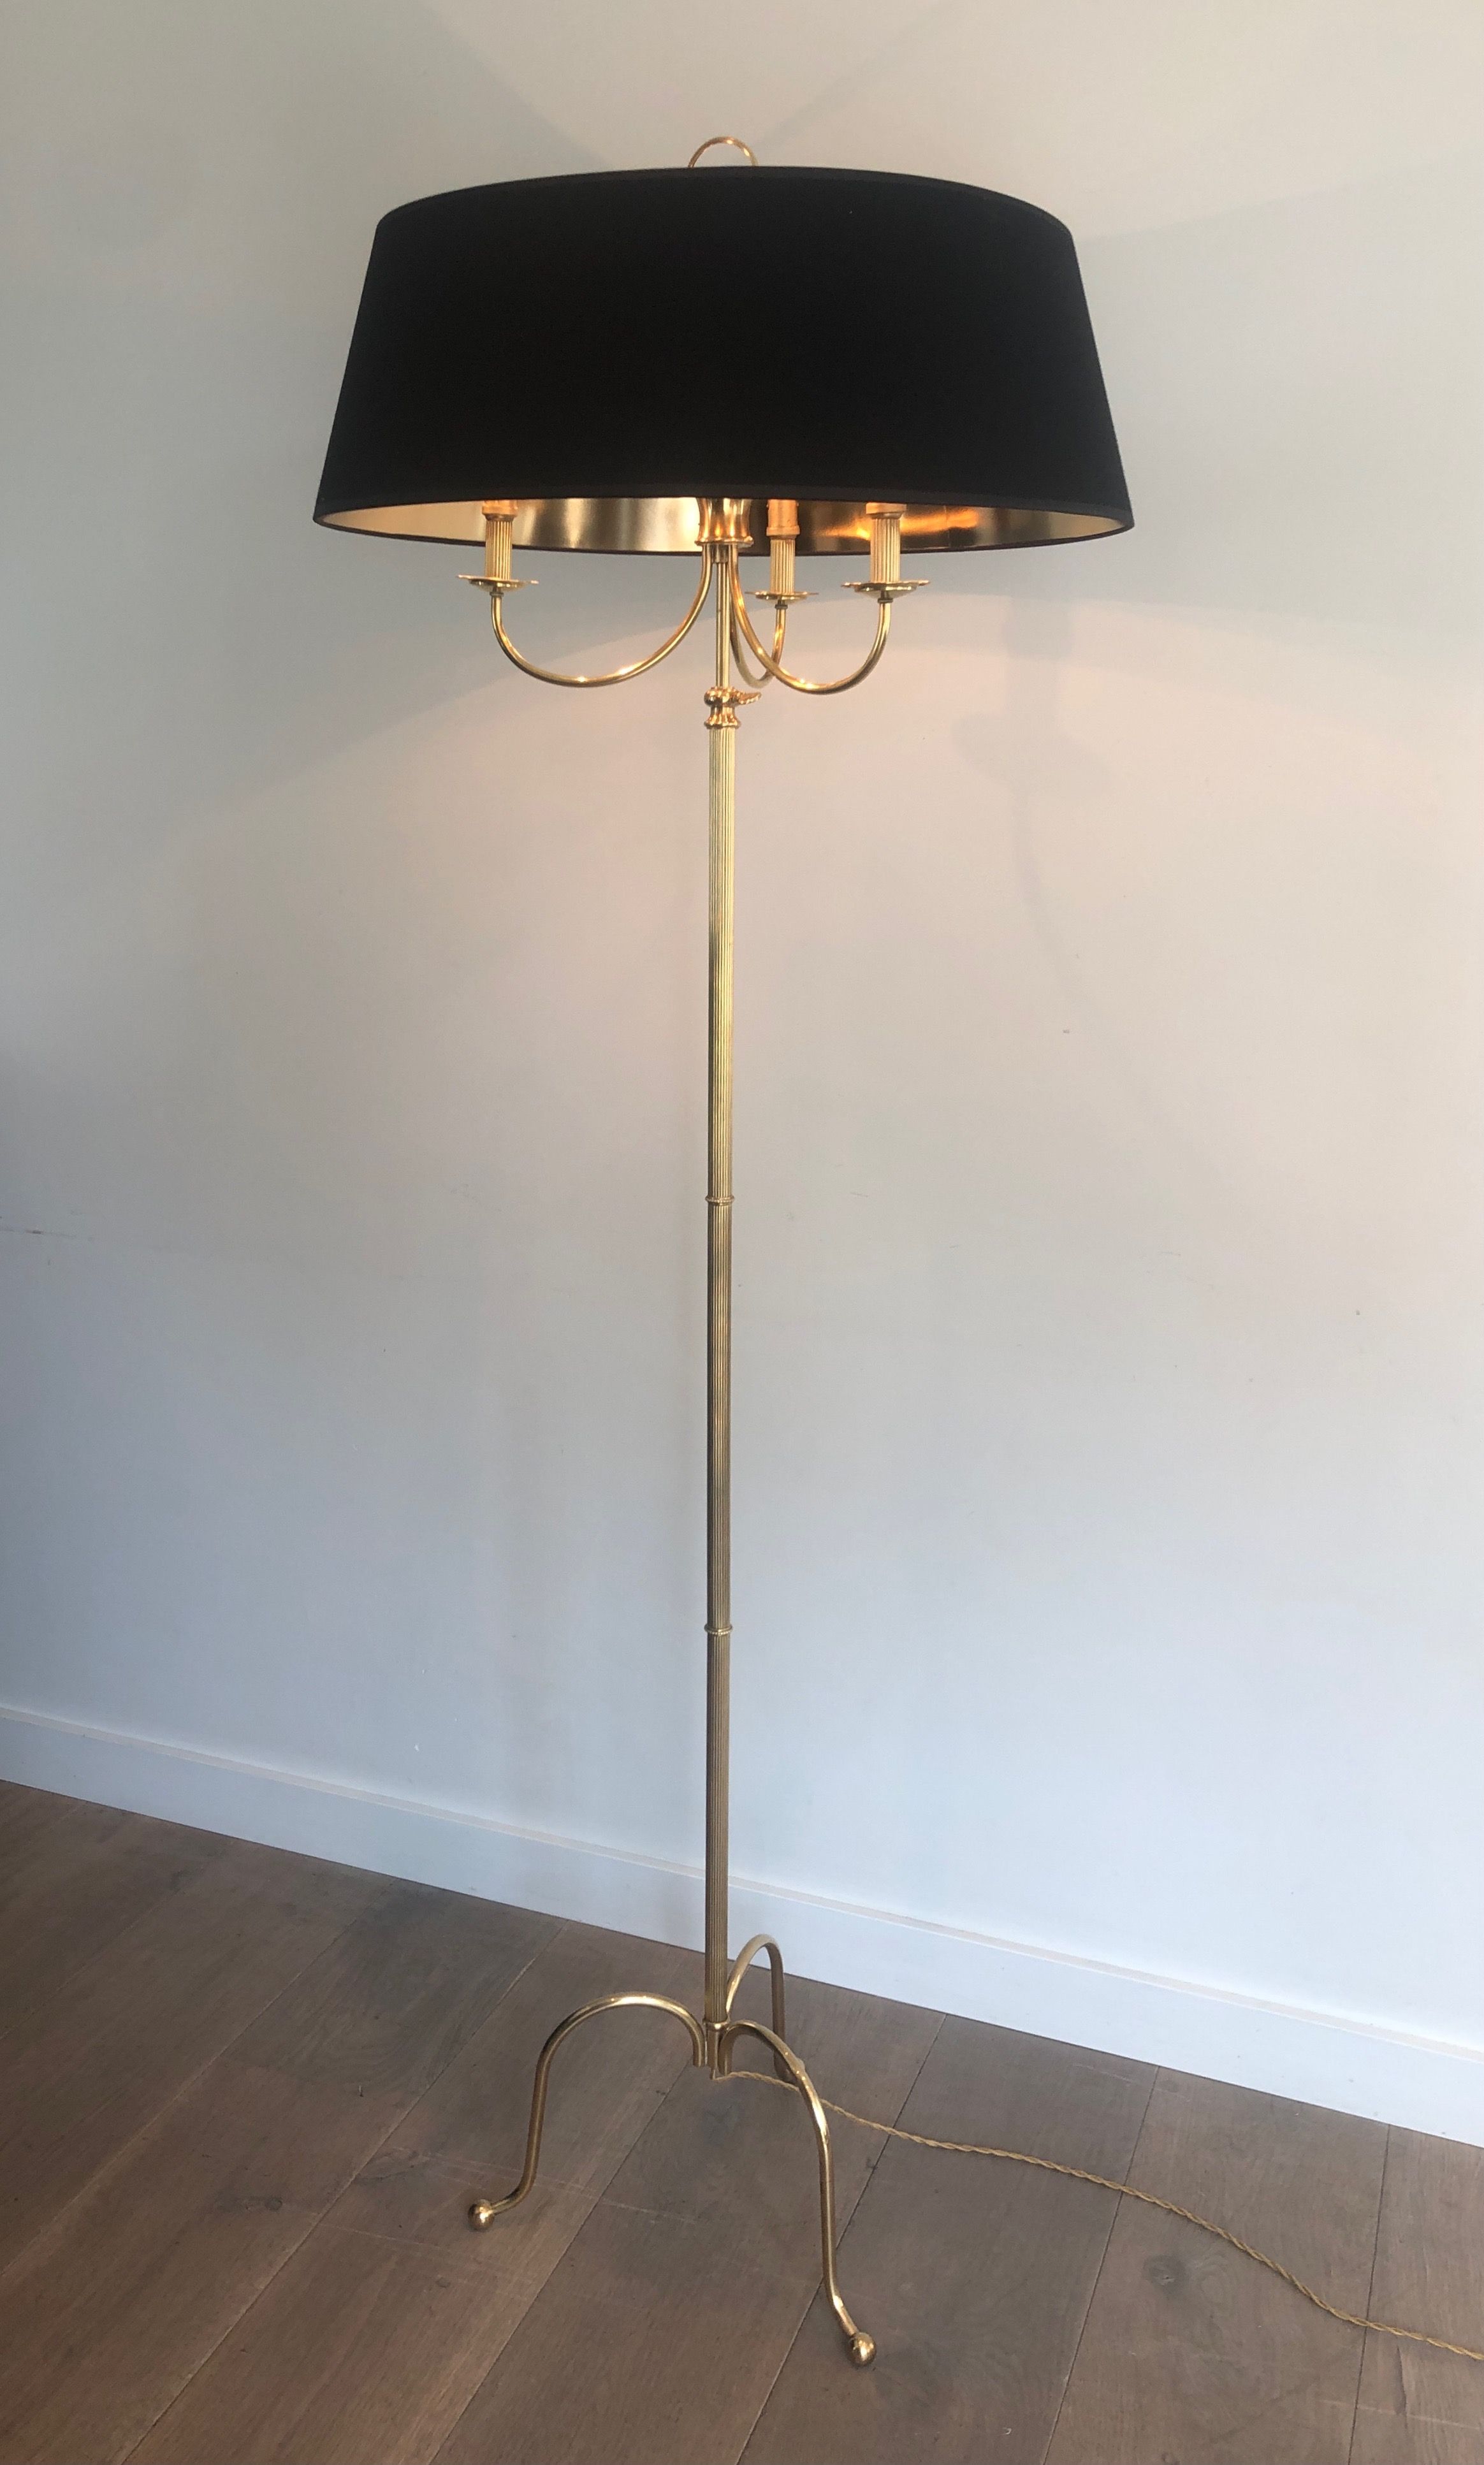 Adjustable Brass Floor Lamp in the style of Maison Jansen